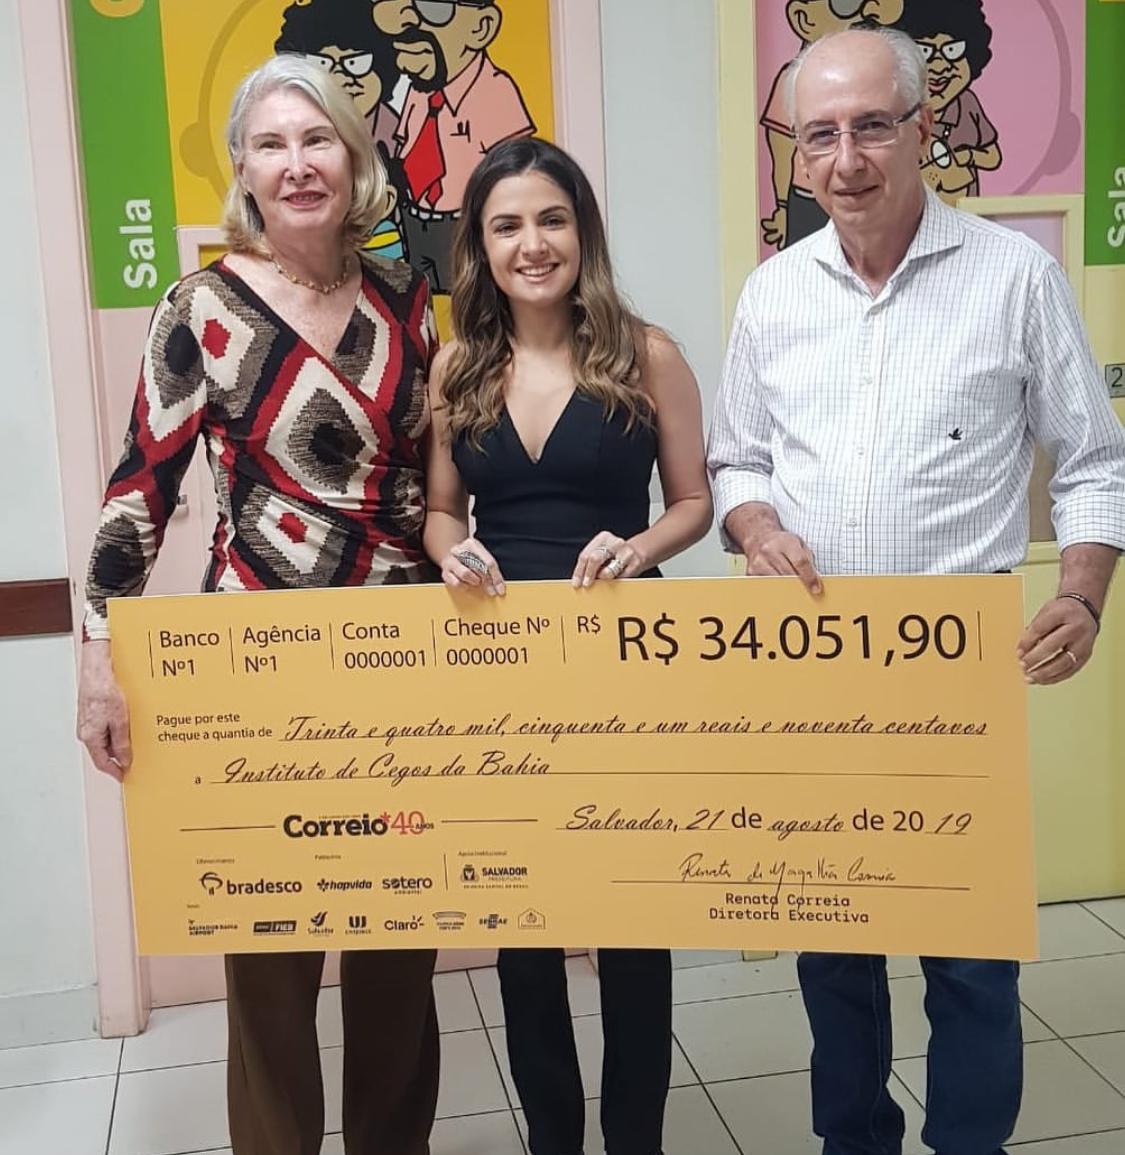 Renata de Magalhães Correia visita, por uma boa causa, o Instituto de Cegos da Bahia  